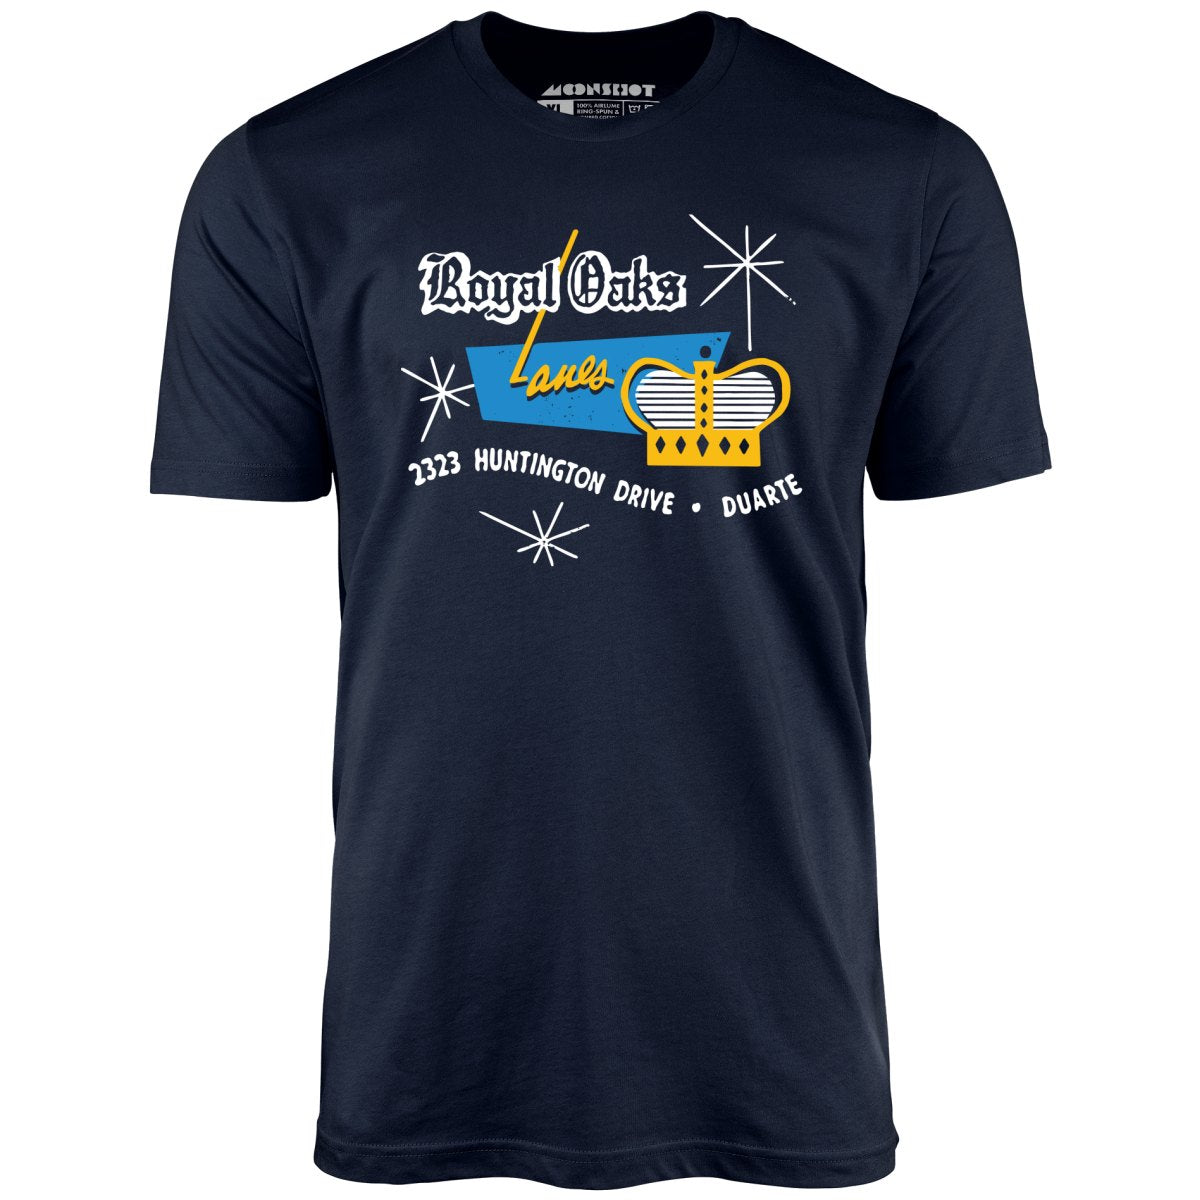 Royal Oaks Lanes - Duarte, CA - Vintage Bowling Alley - Unisex T-Shirt